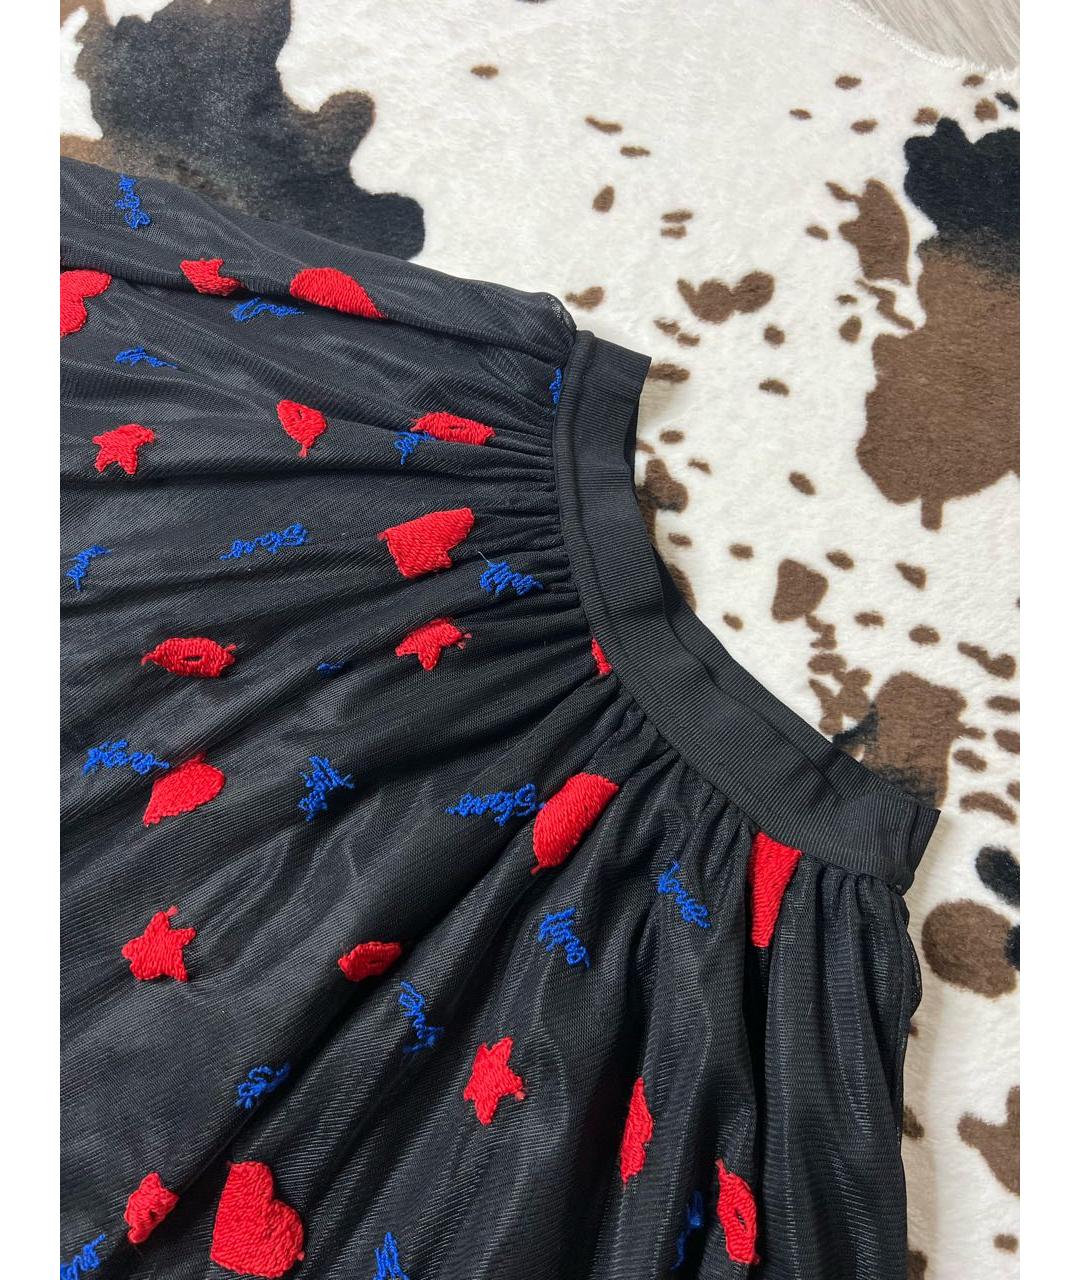 PINKO Черная полиэстеровая юбка мини, фото 2